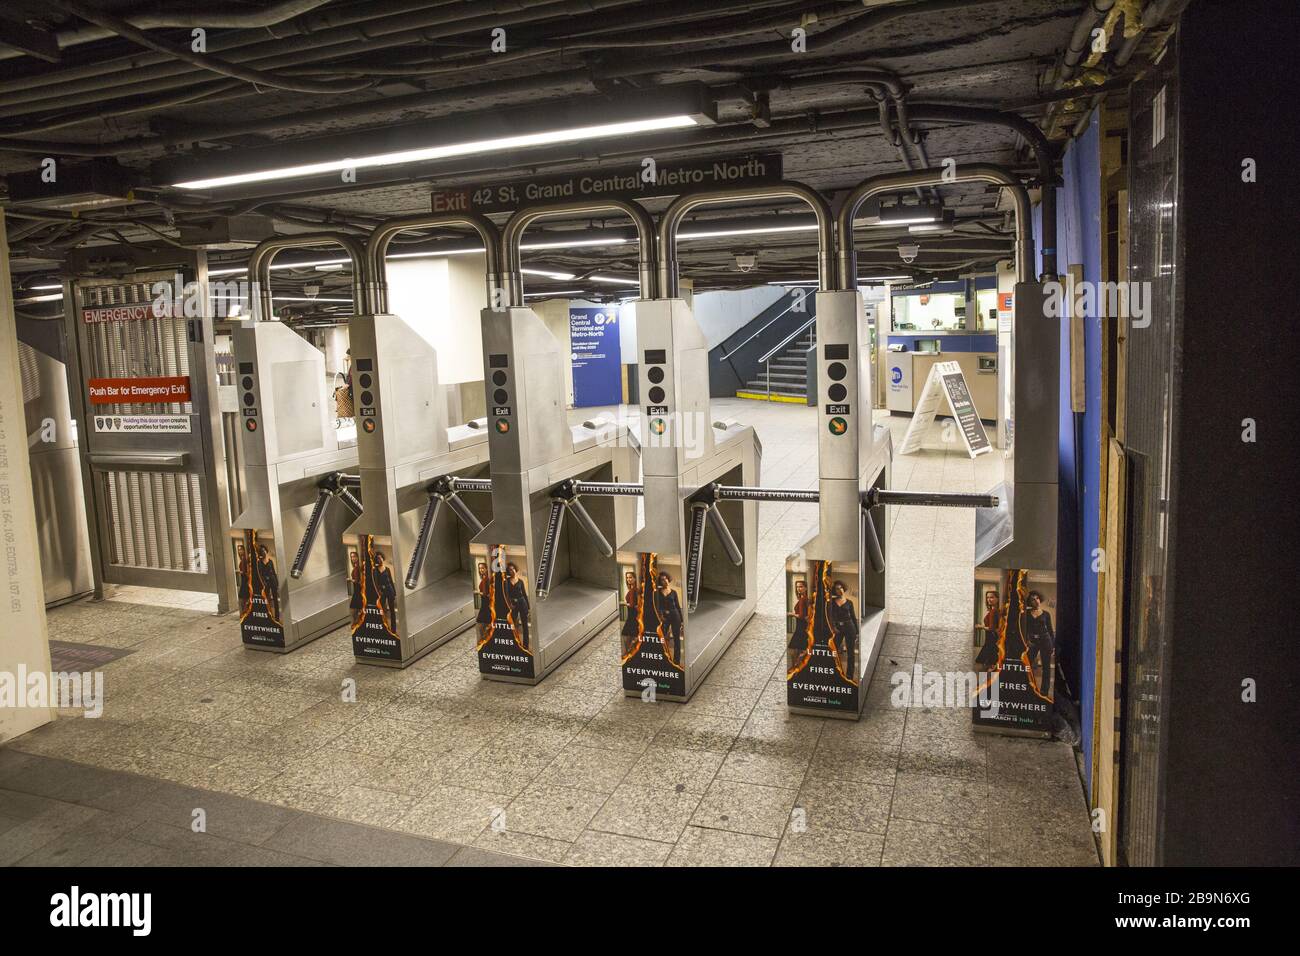 Die U-Bahn-Station Grand Central 42nd Street, die normalerweise immer besetzt ist, steht heute mit dem Aufstieg des Coronavirus und der Sperrung in New York meist leer. Stockfoto